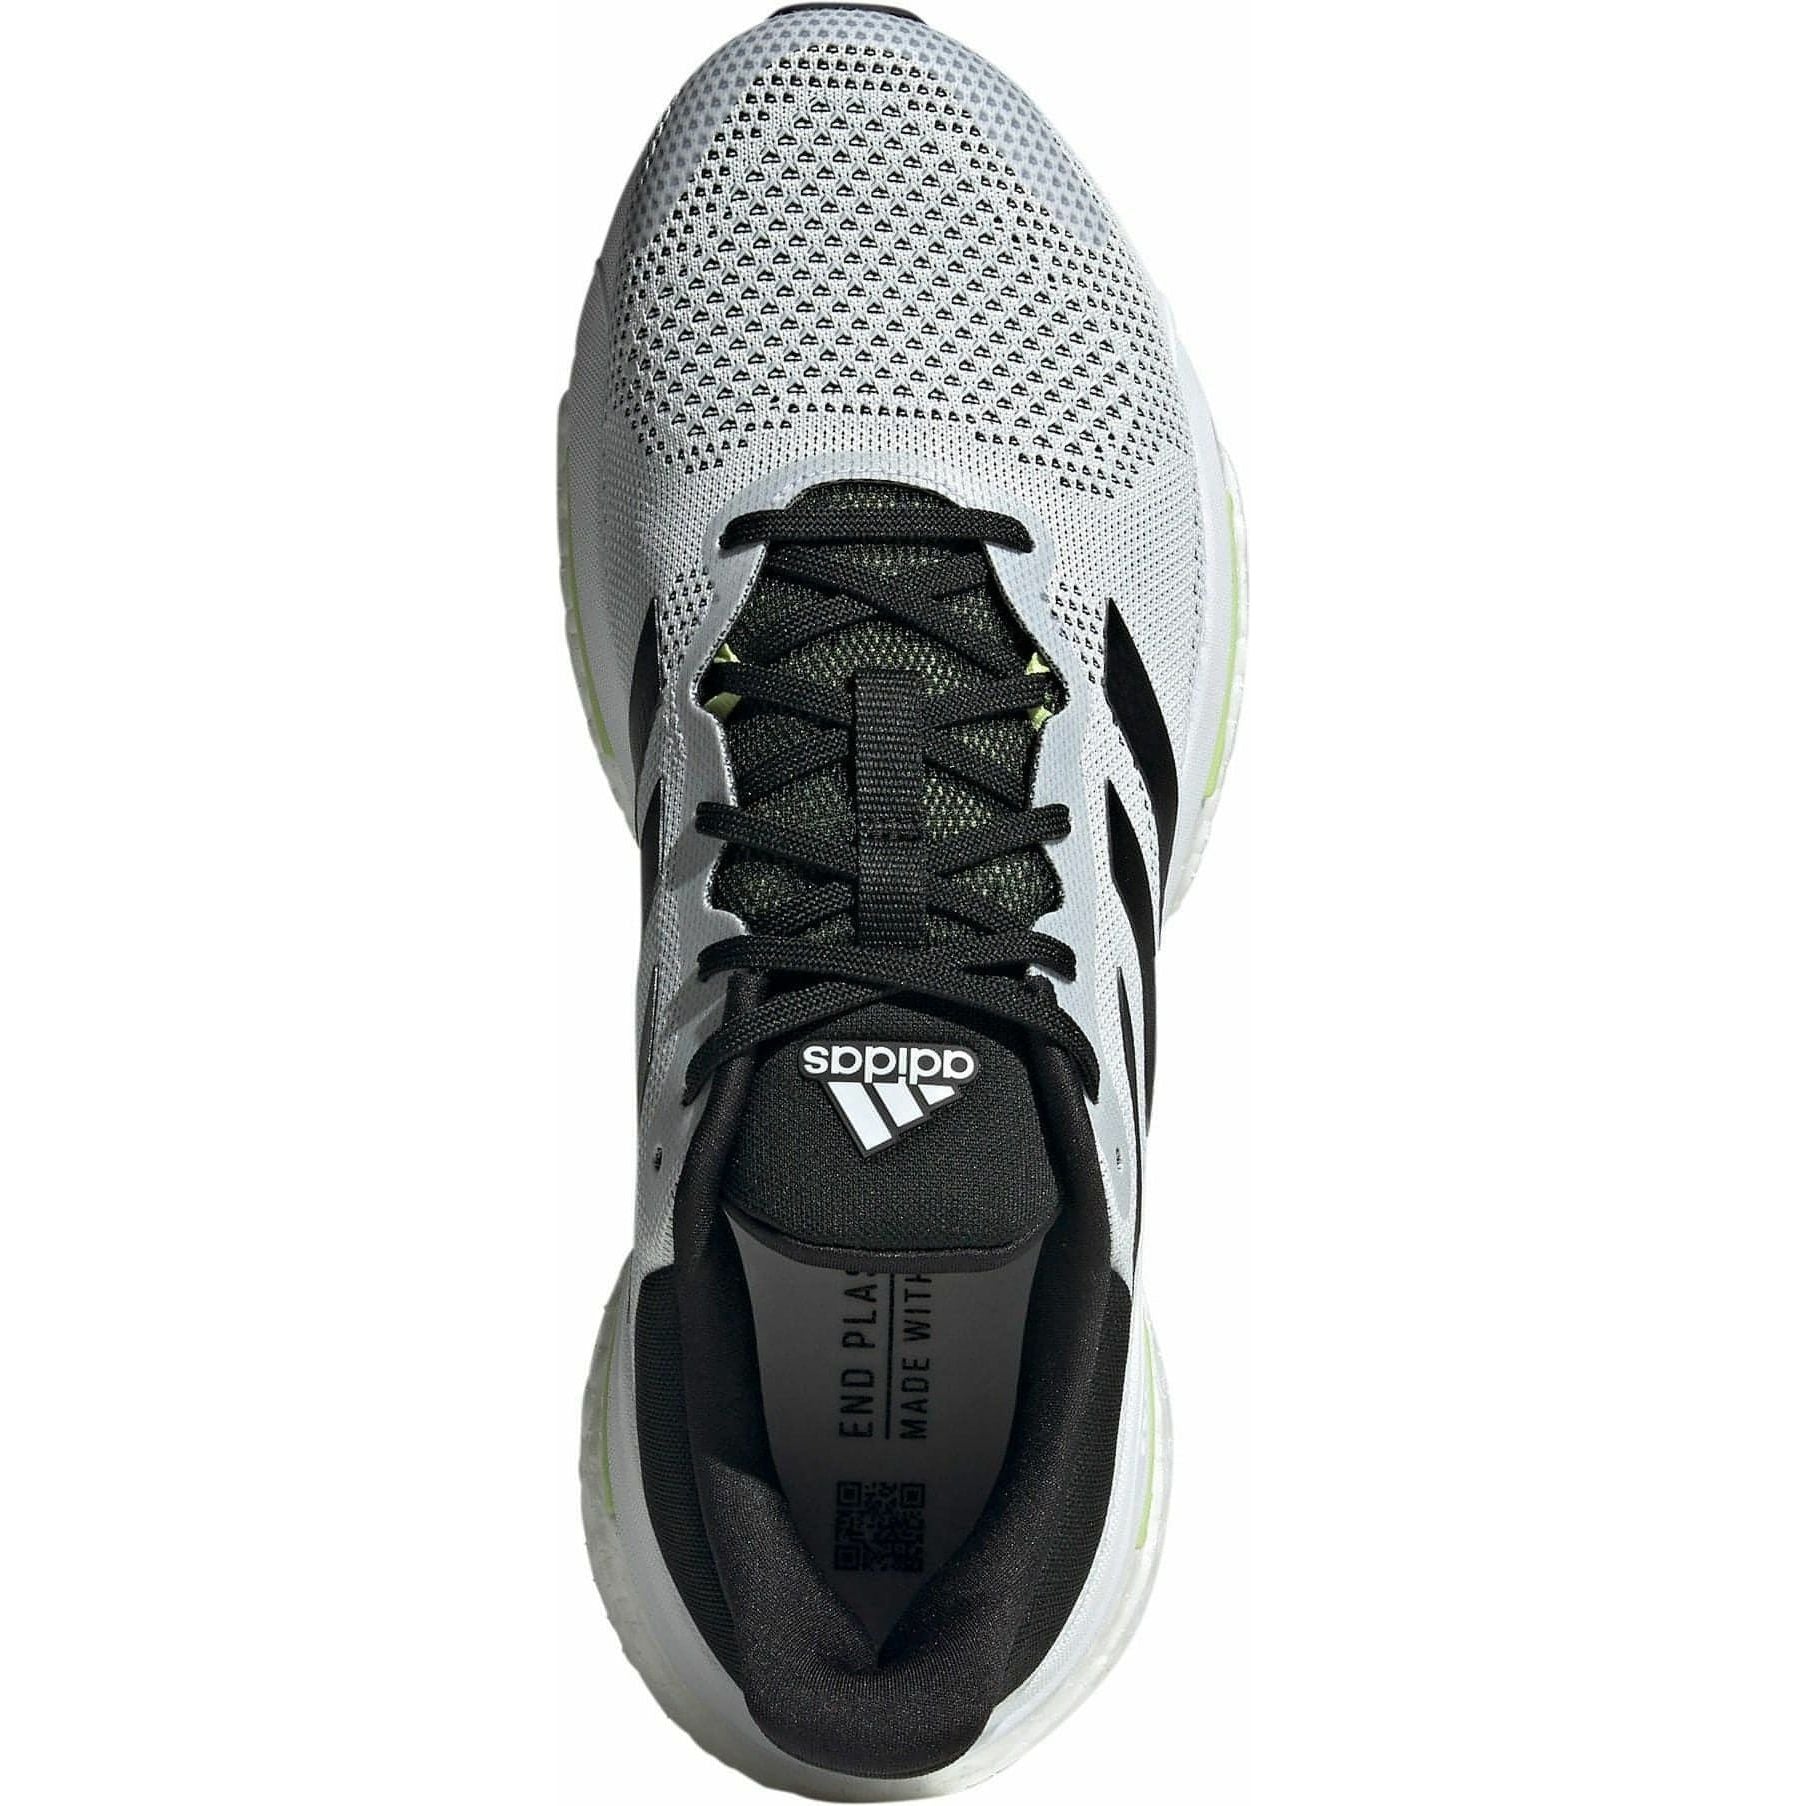 adidas Solar Glide 5 Mens Running Shoes - White - Start Fitness